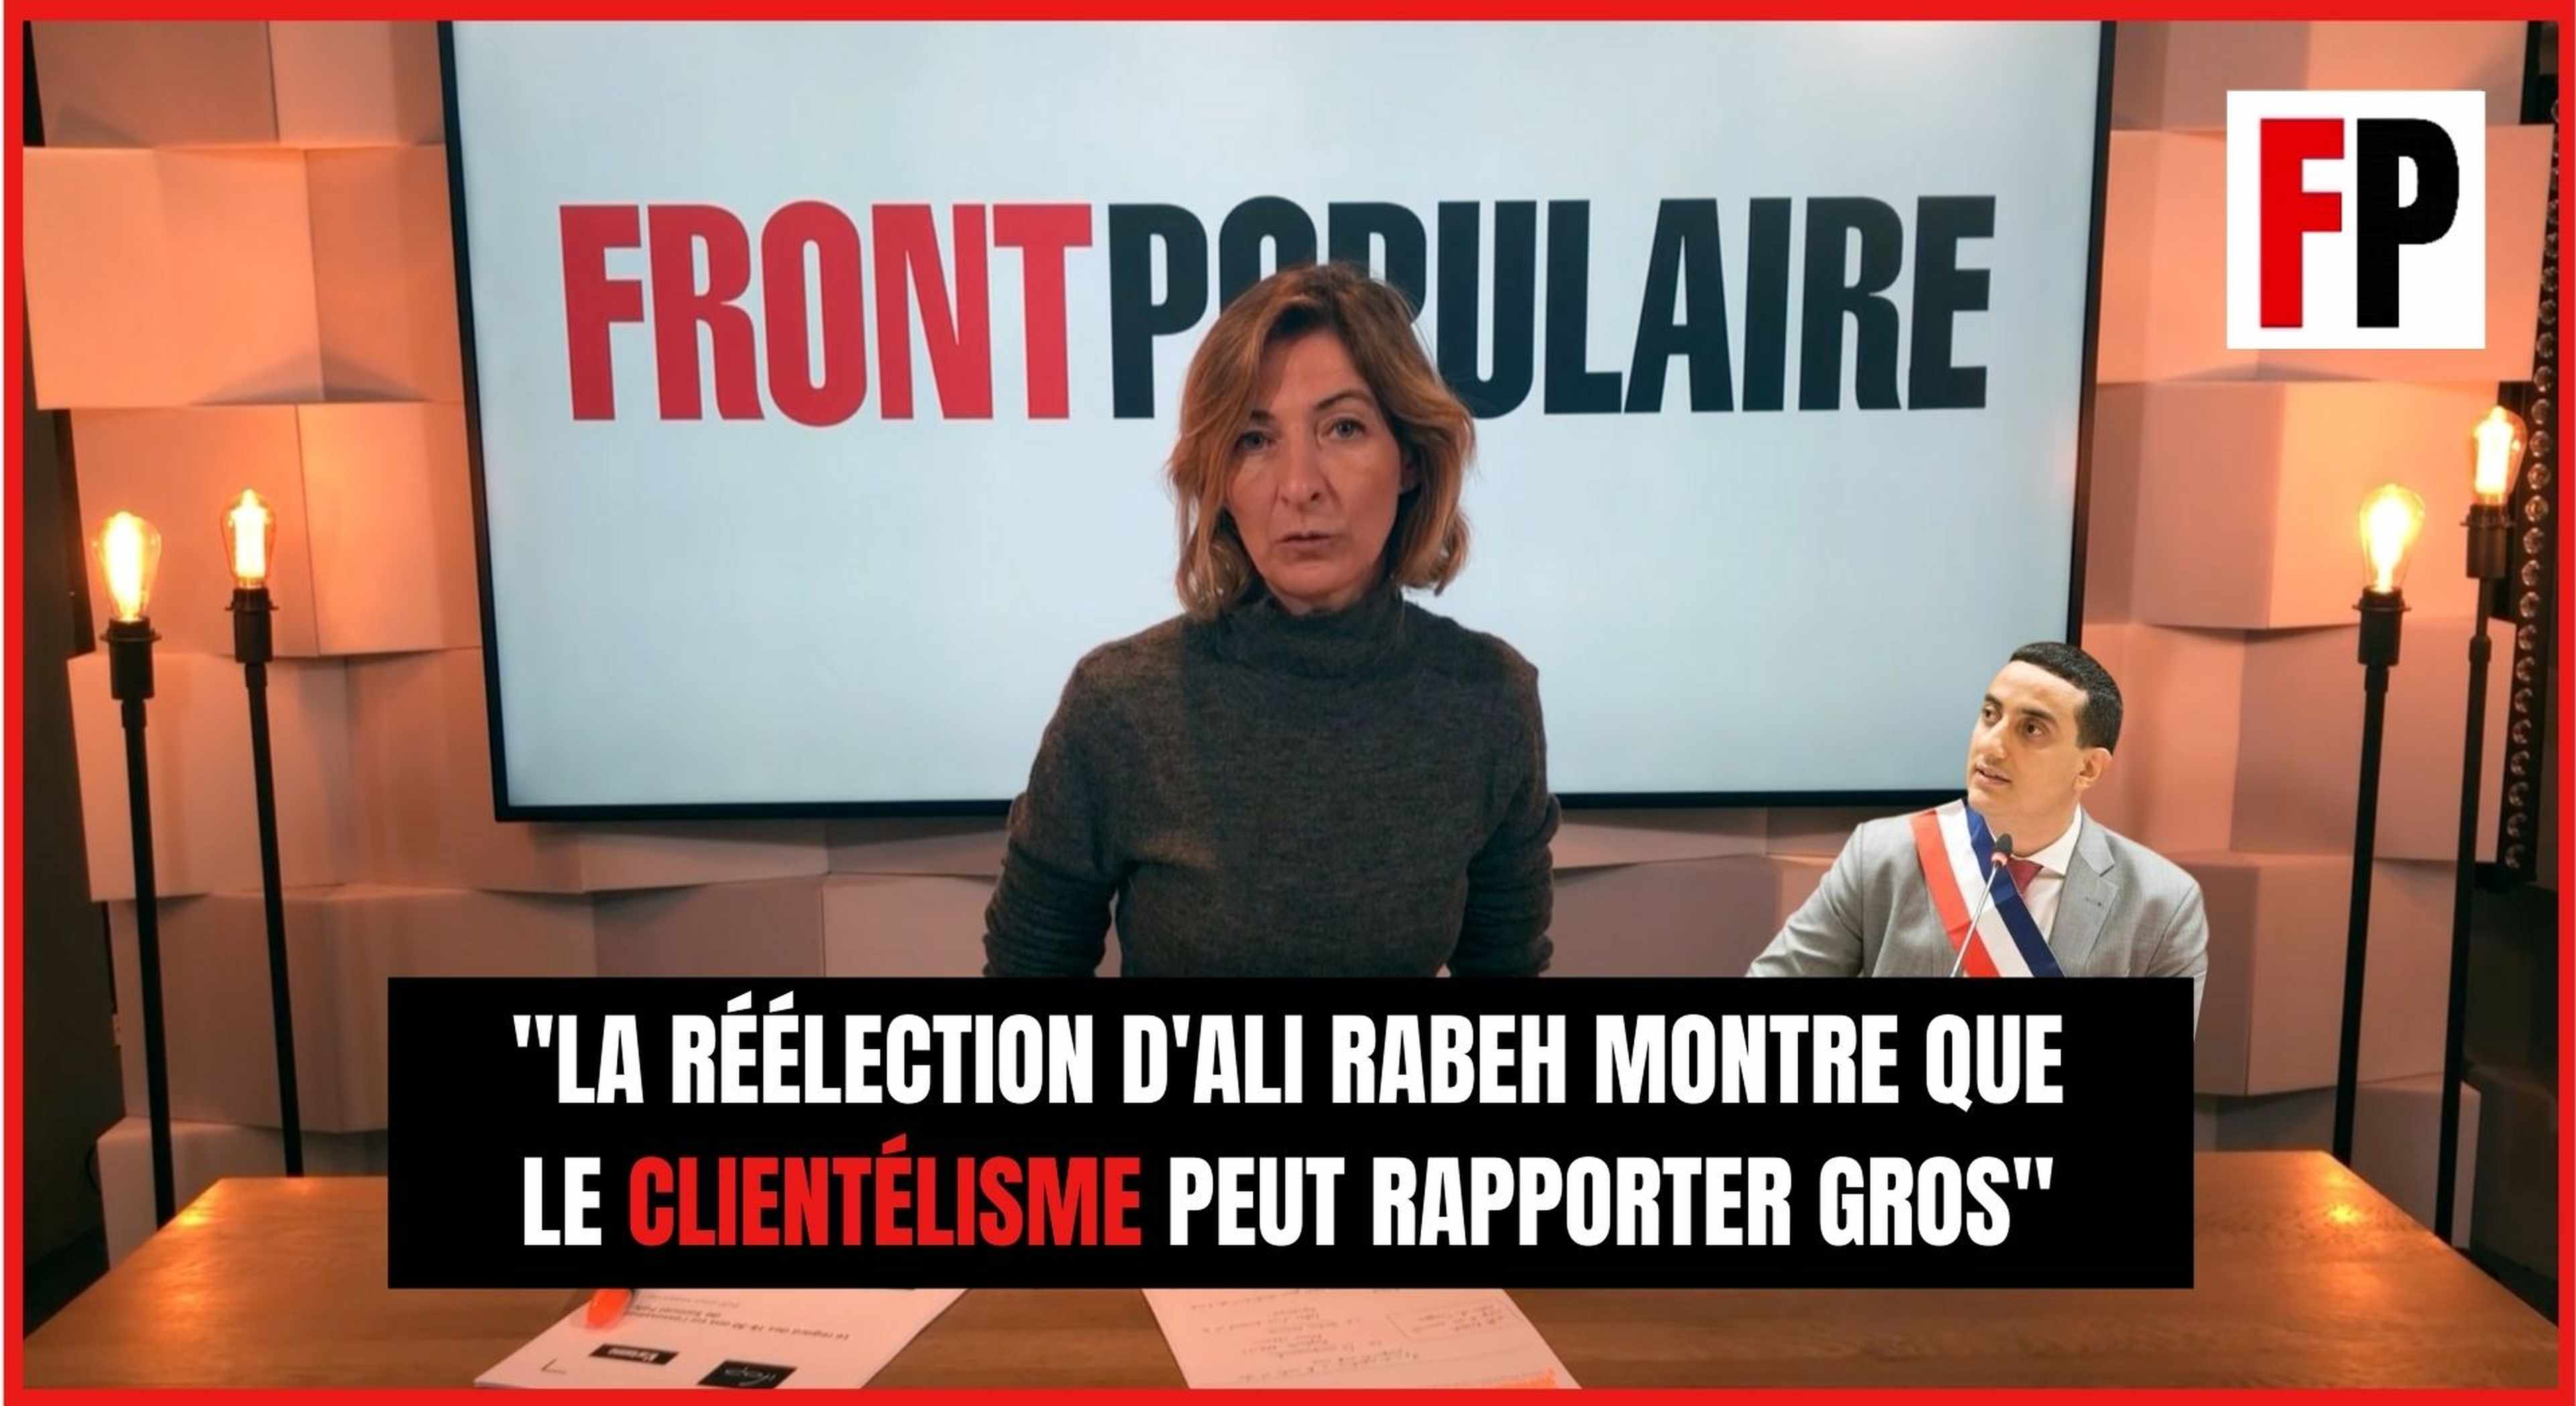 Céline Pina : "La réélection d'Ali Rabeh montre que le clientélisme peut rapporter gros"